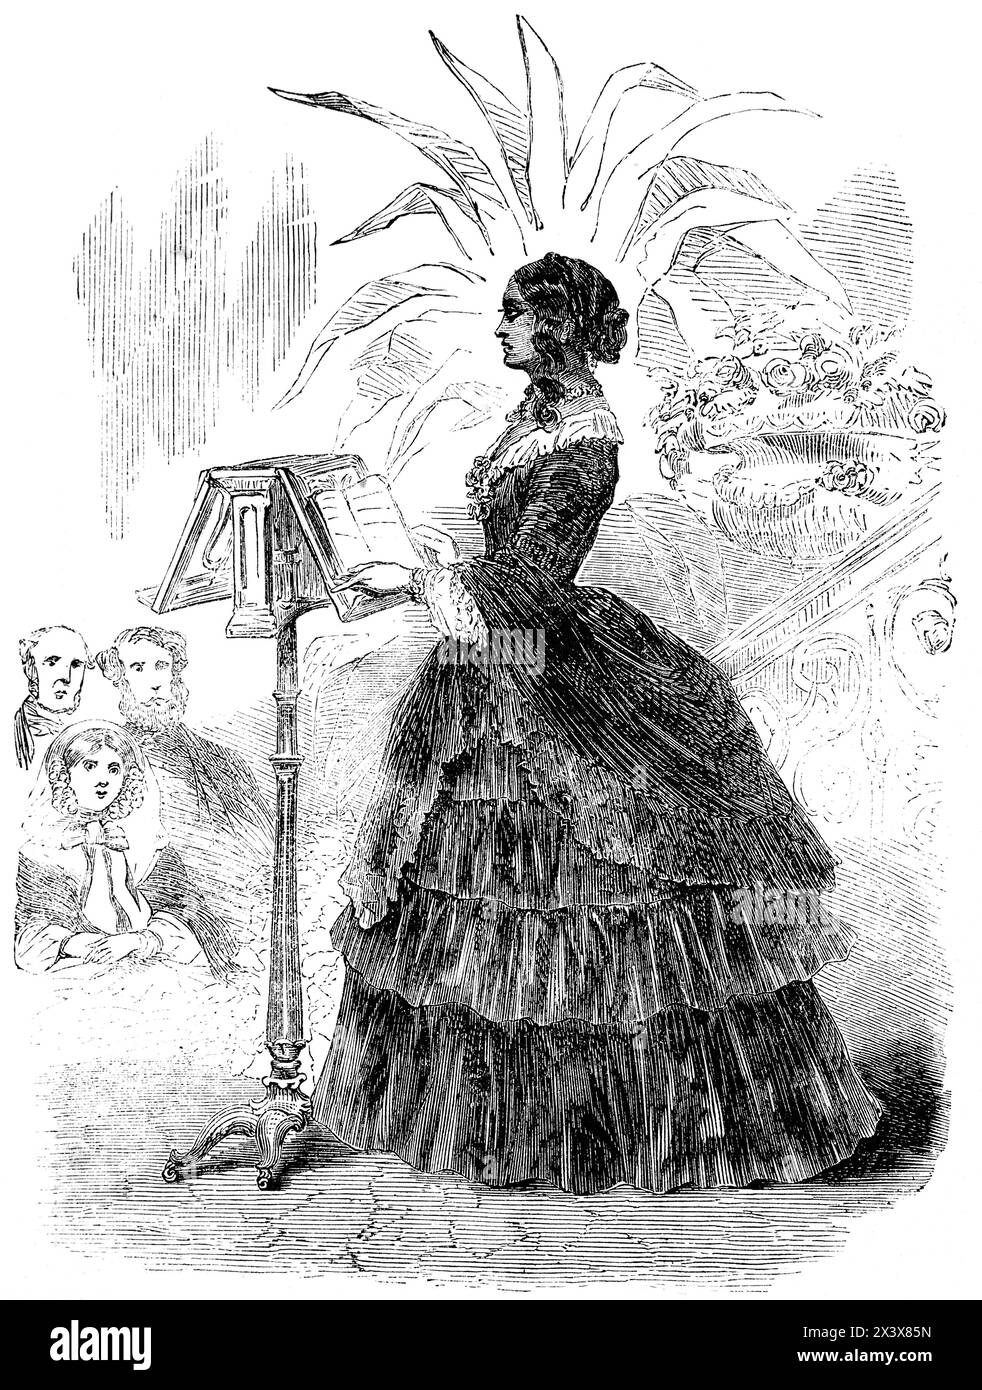 Mary E. Webb, une « dame de couleur de Philadelphie », lisant la case de l'oncle Tom lors d'une réunion à Stafford House en 1856, Angleterre, rapportée dans The London Illustrated News, 2 août 1856, vol 29 (814) Banque D'Images